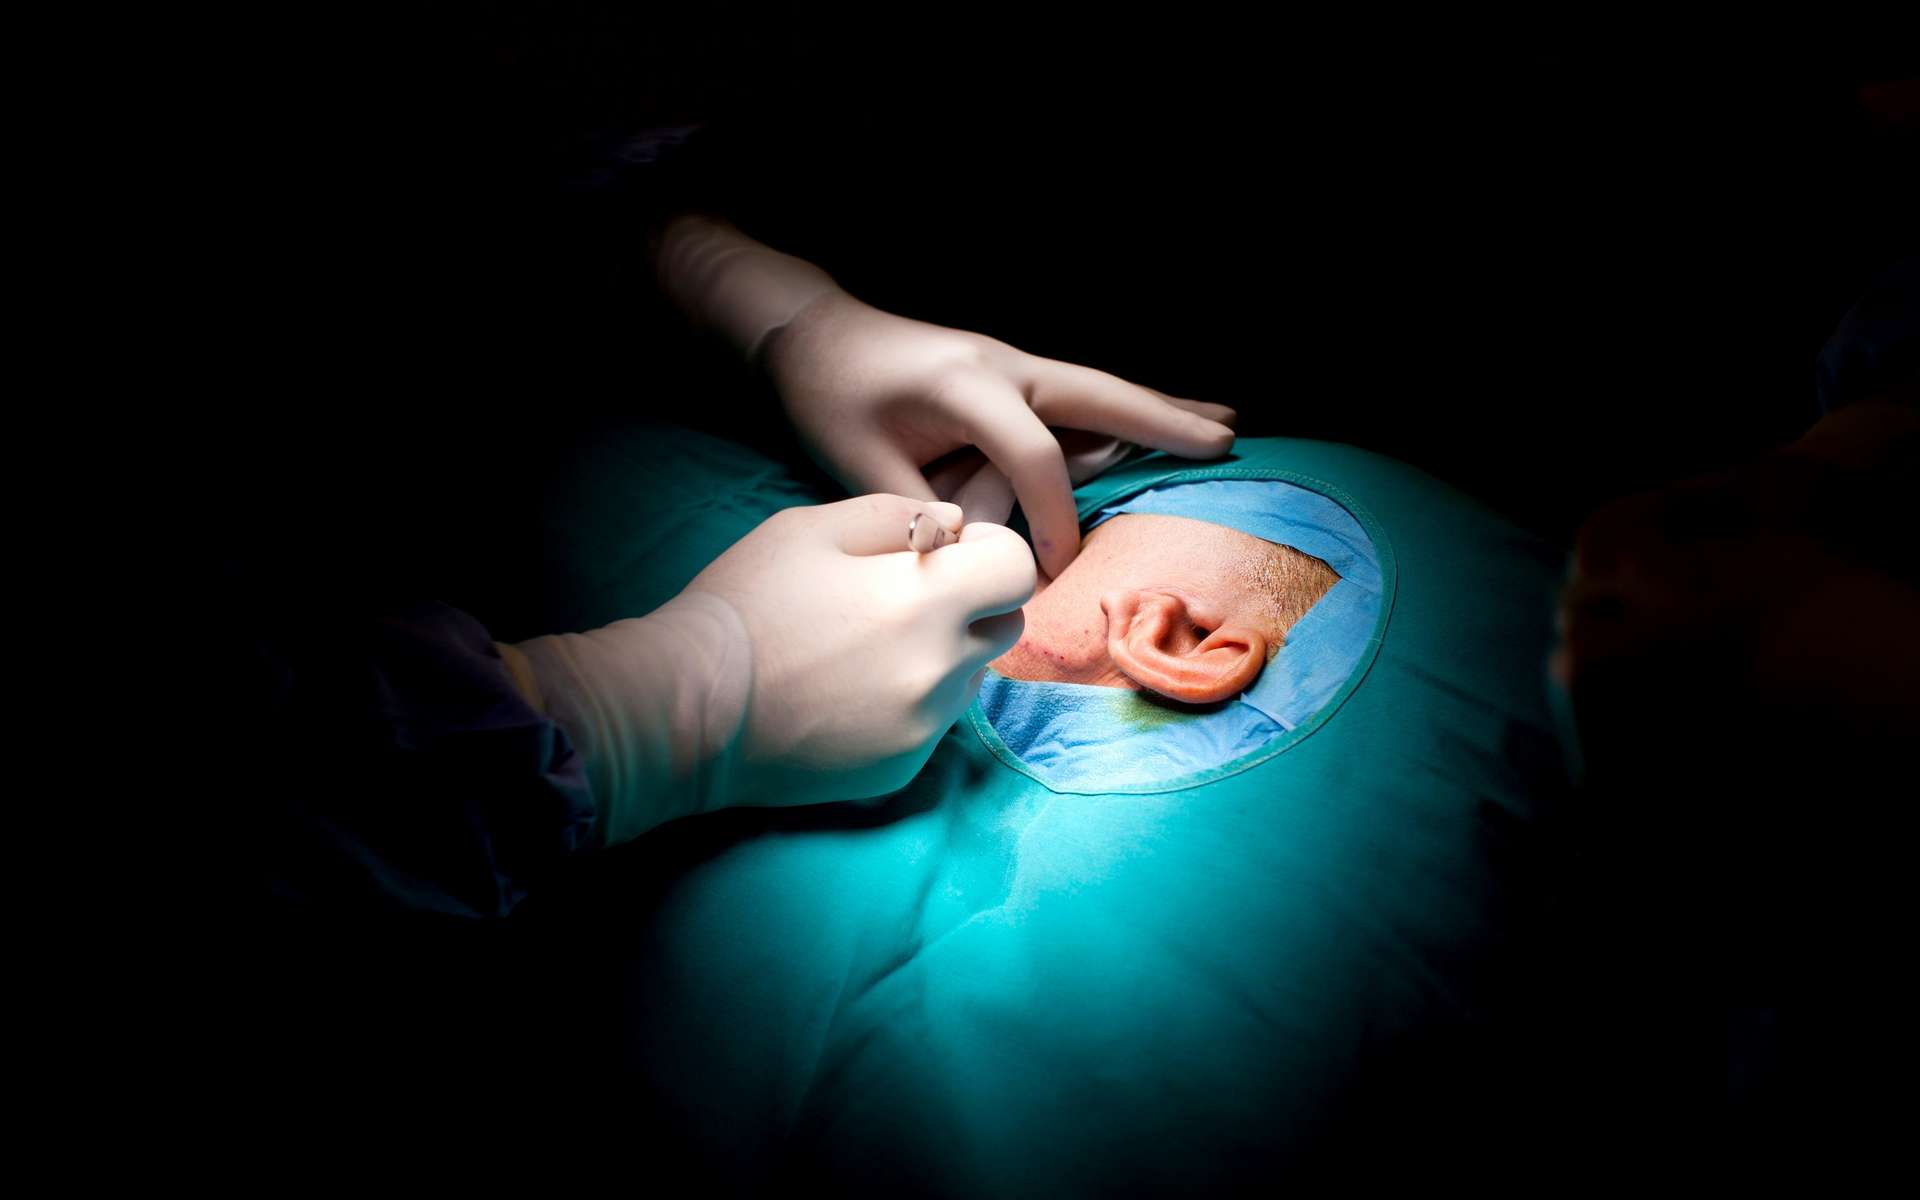 Un implant expérimental de tissu vivant bio-imprimé en 3D a été greffé sur une patiente atteinte de microtie, une maladie congénitale qui se caractérise par une oreille externe incomplète. © Ciseren, Getty Images